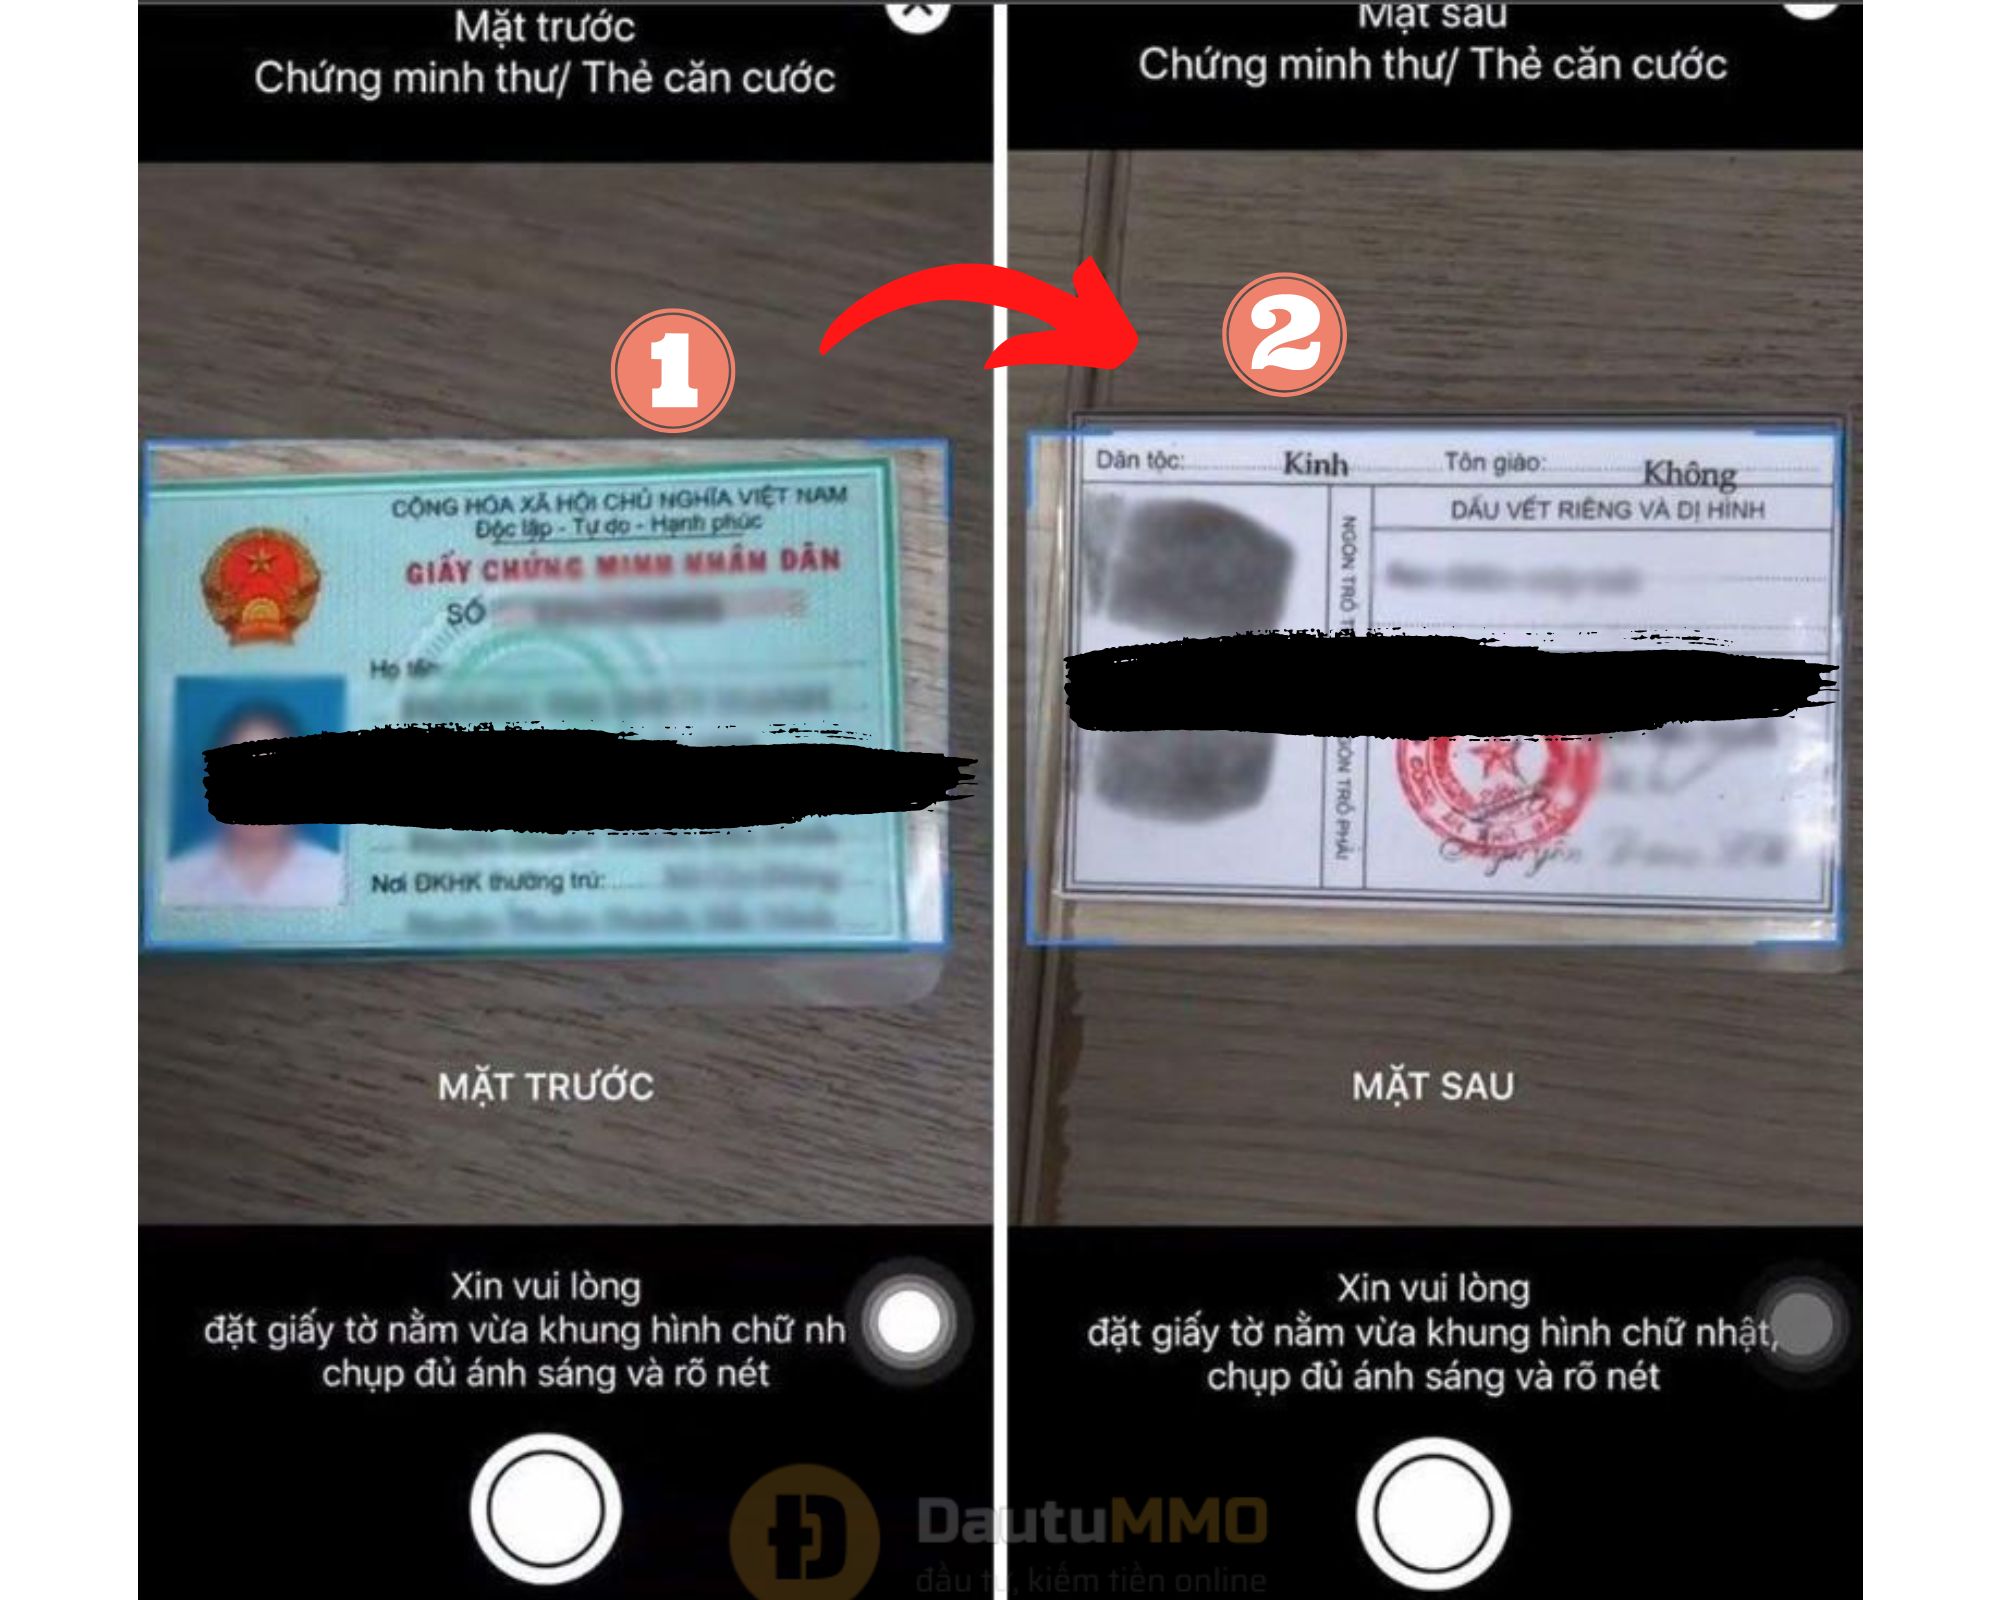 Chụp ảnh mặt trước và mặt sau chứng minh thư nhân dân để xác minh danh tính tài khoản MBBank